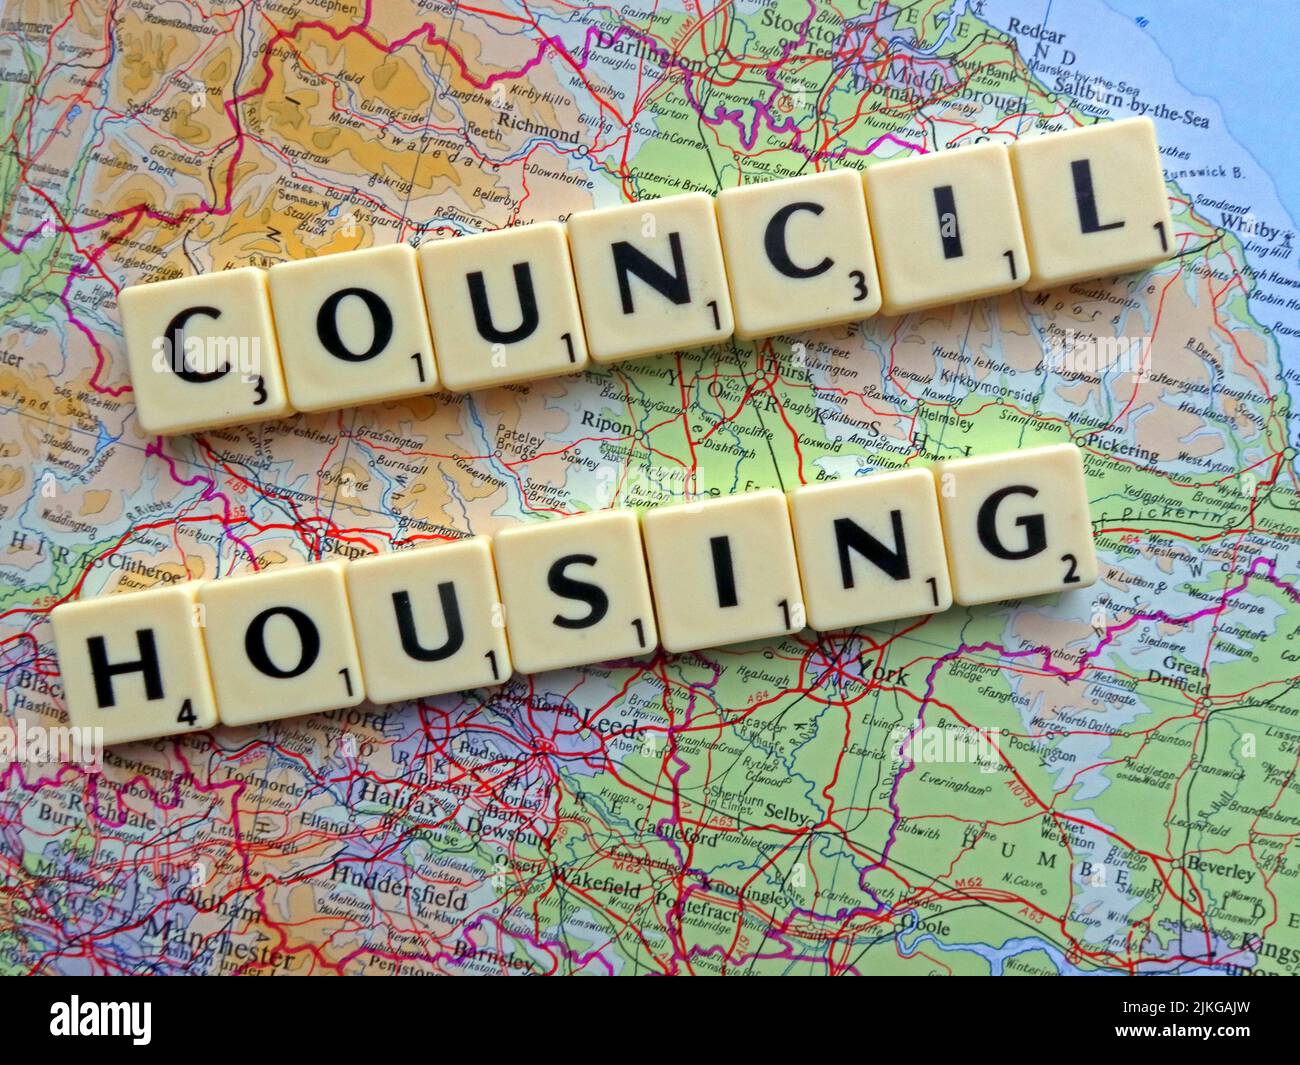 Council Housing a écrit dans des lettres Scrabble sur une carte de l'Angleterre, une politique déjà rejetée par l'Ecosse et le pays de Galles assemble Banque D'Images